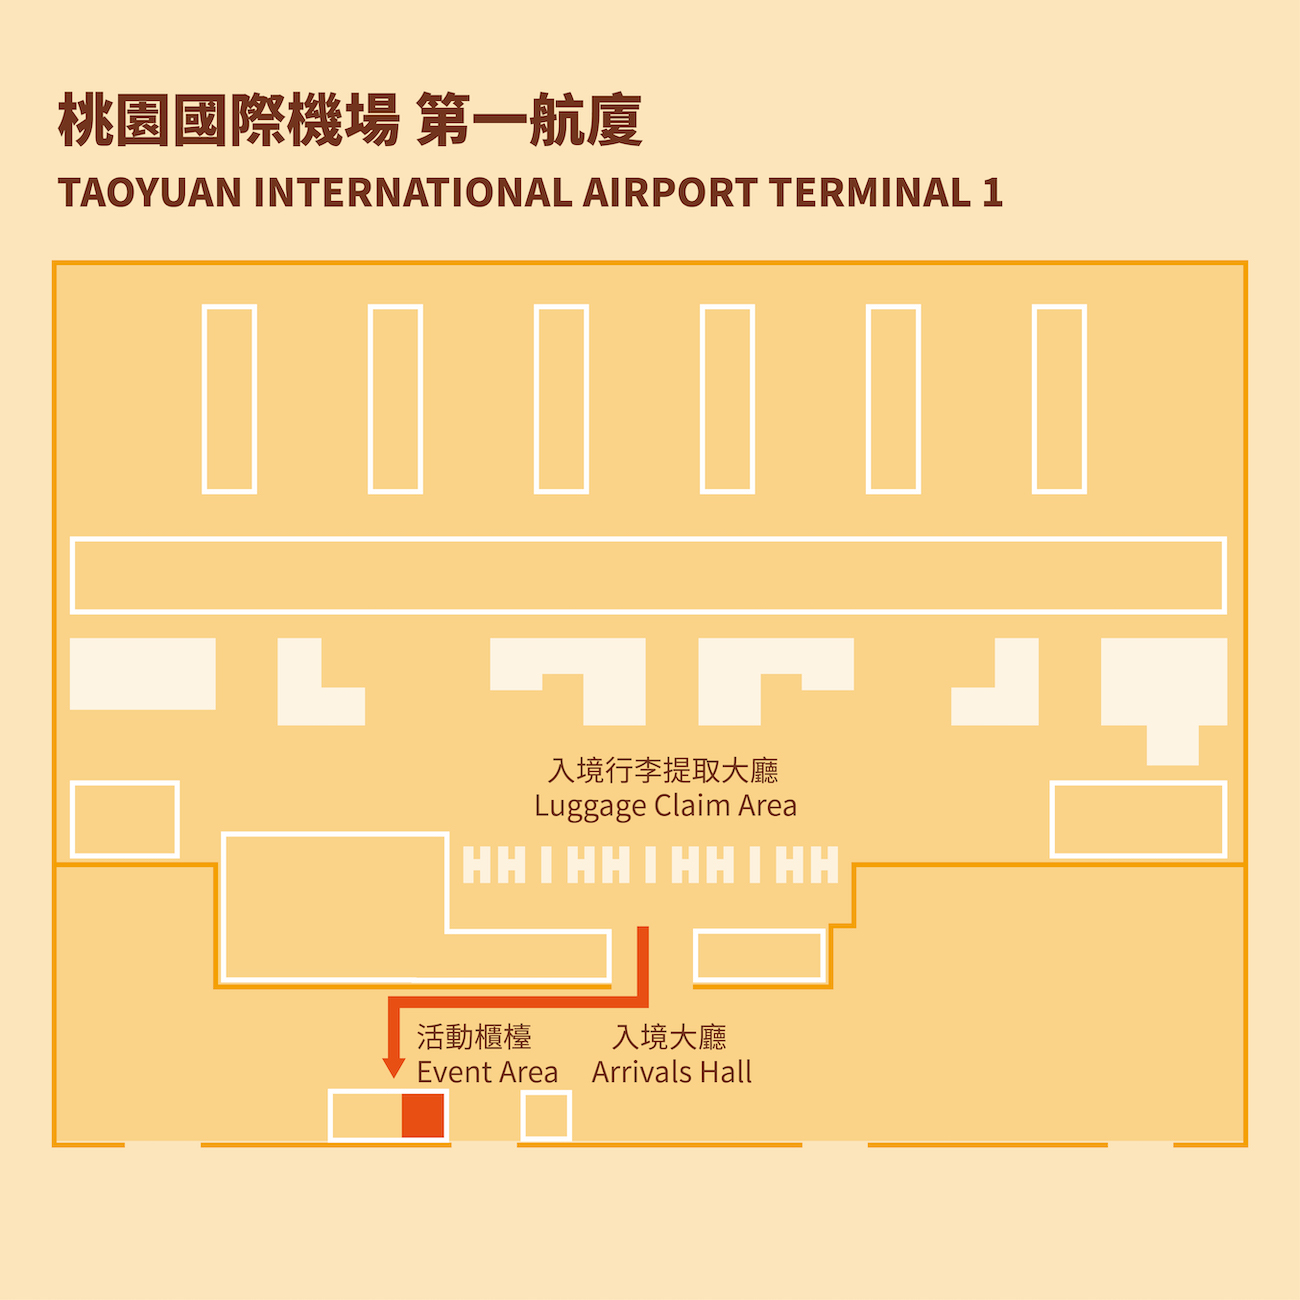 Taoyuan International Airport Terminal 1